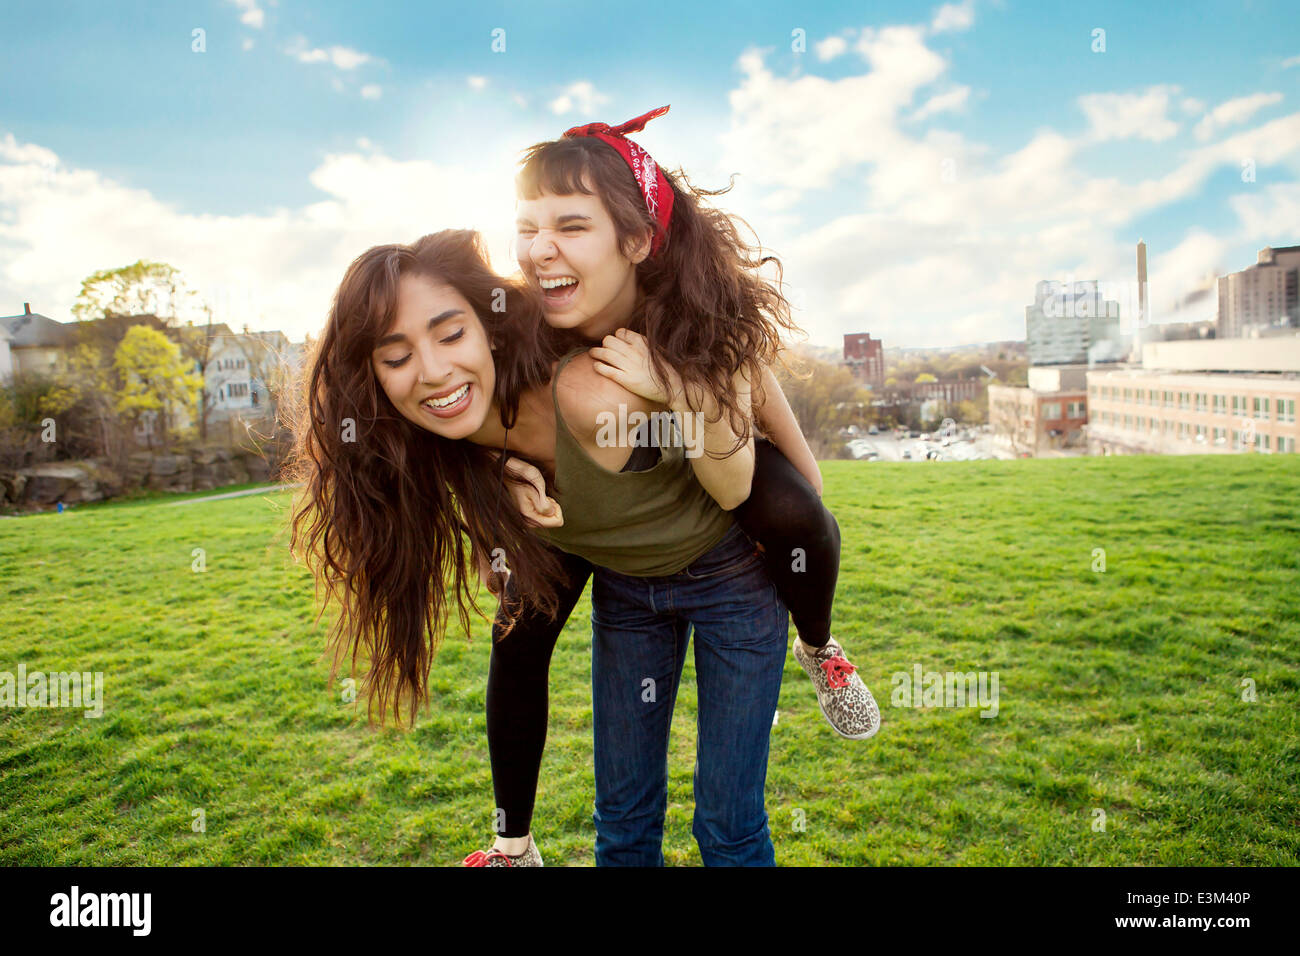 Giovane donna dando piggyback ride al suo amico Foto Stock